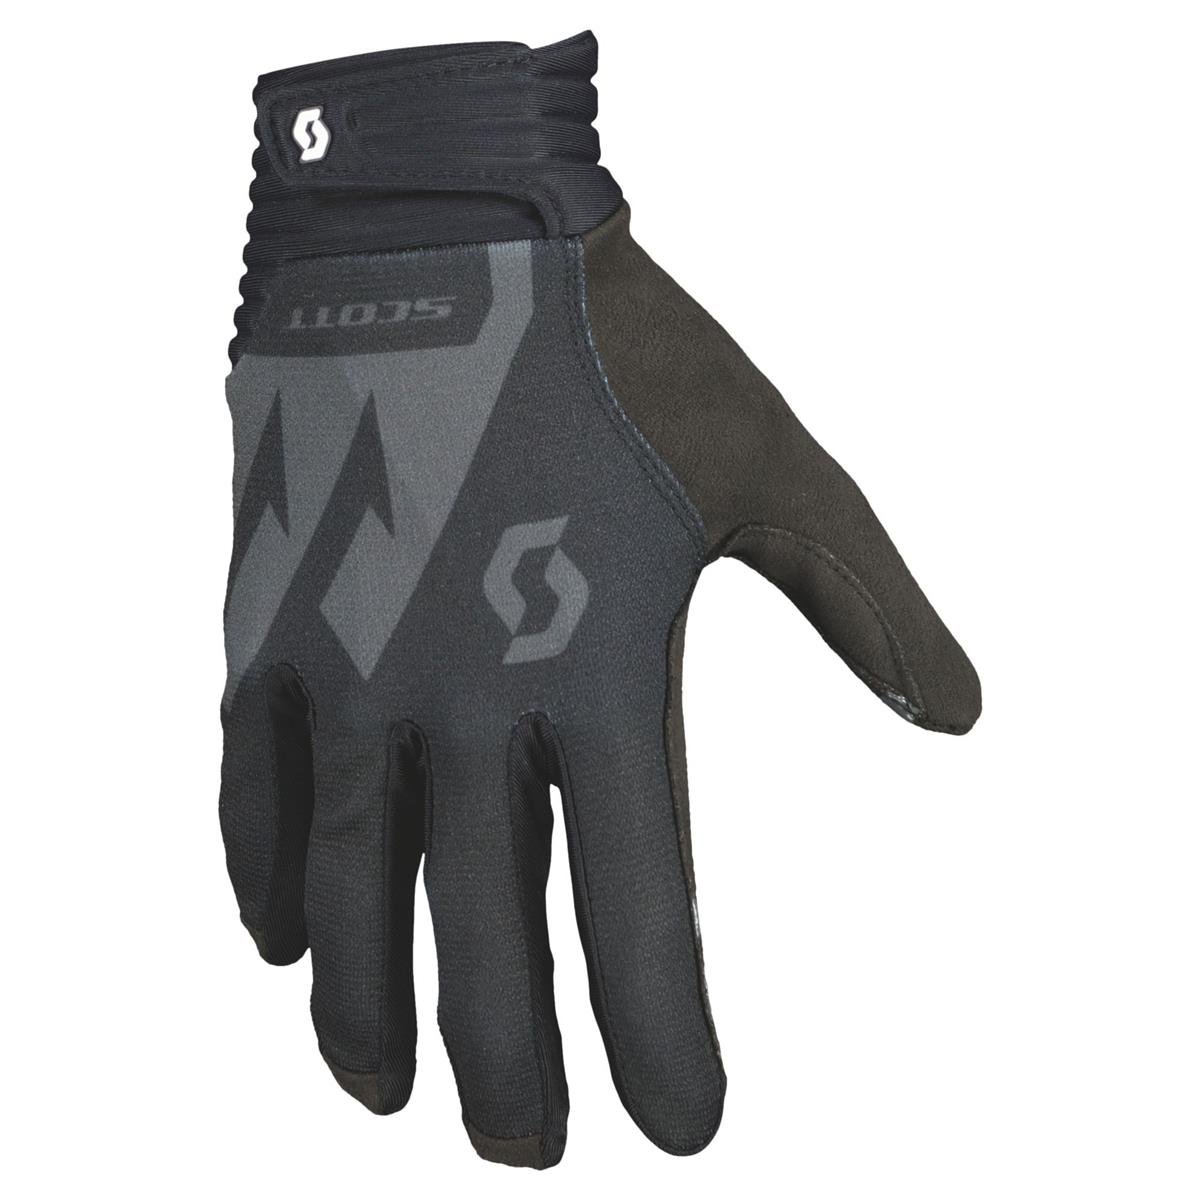 Scott MTB Gloves DH Factory LF Black/Light Gray